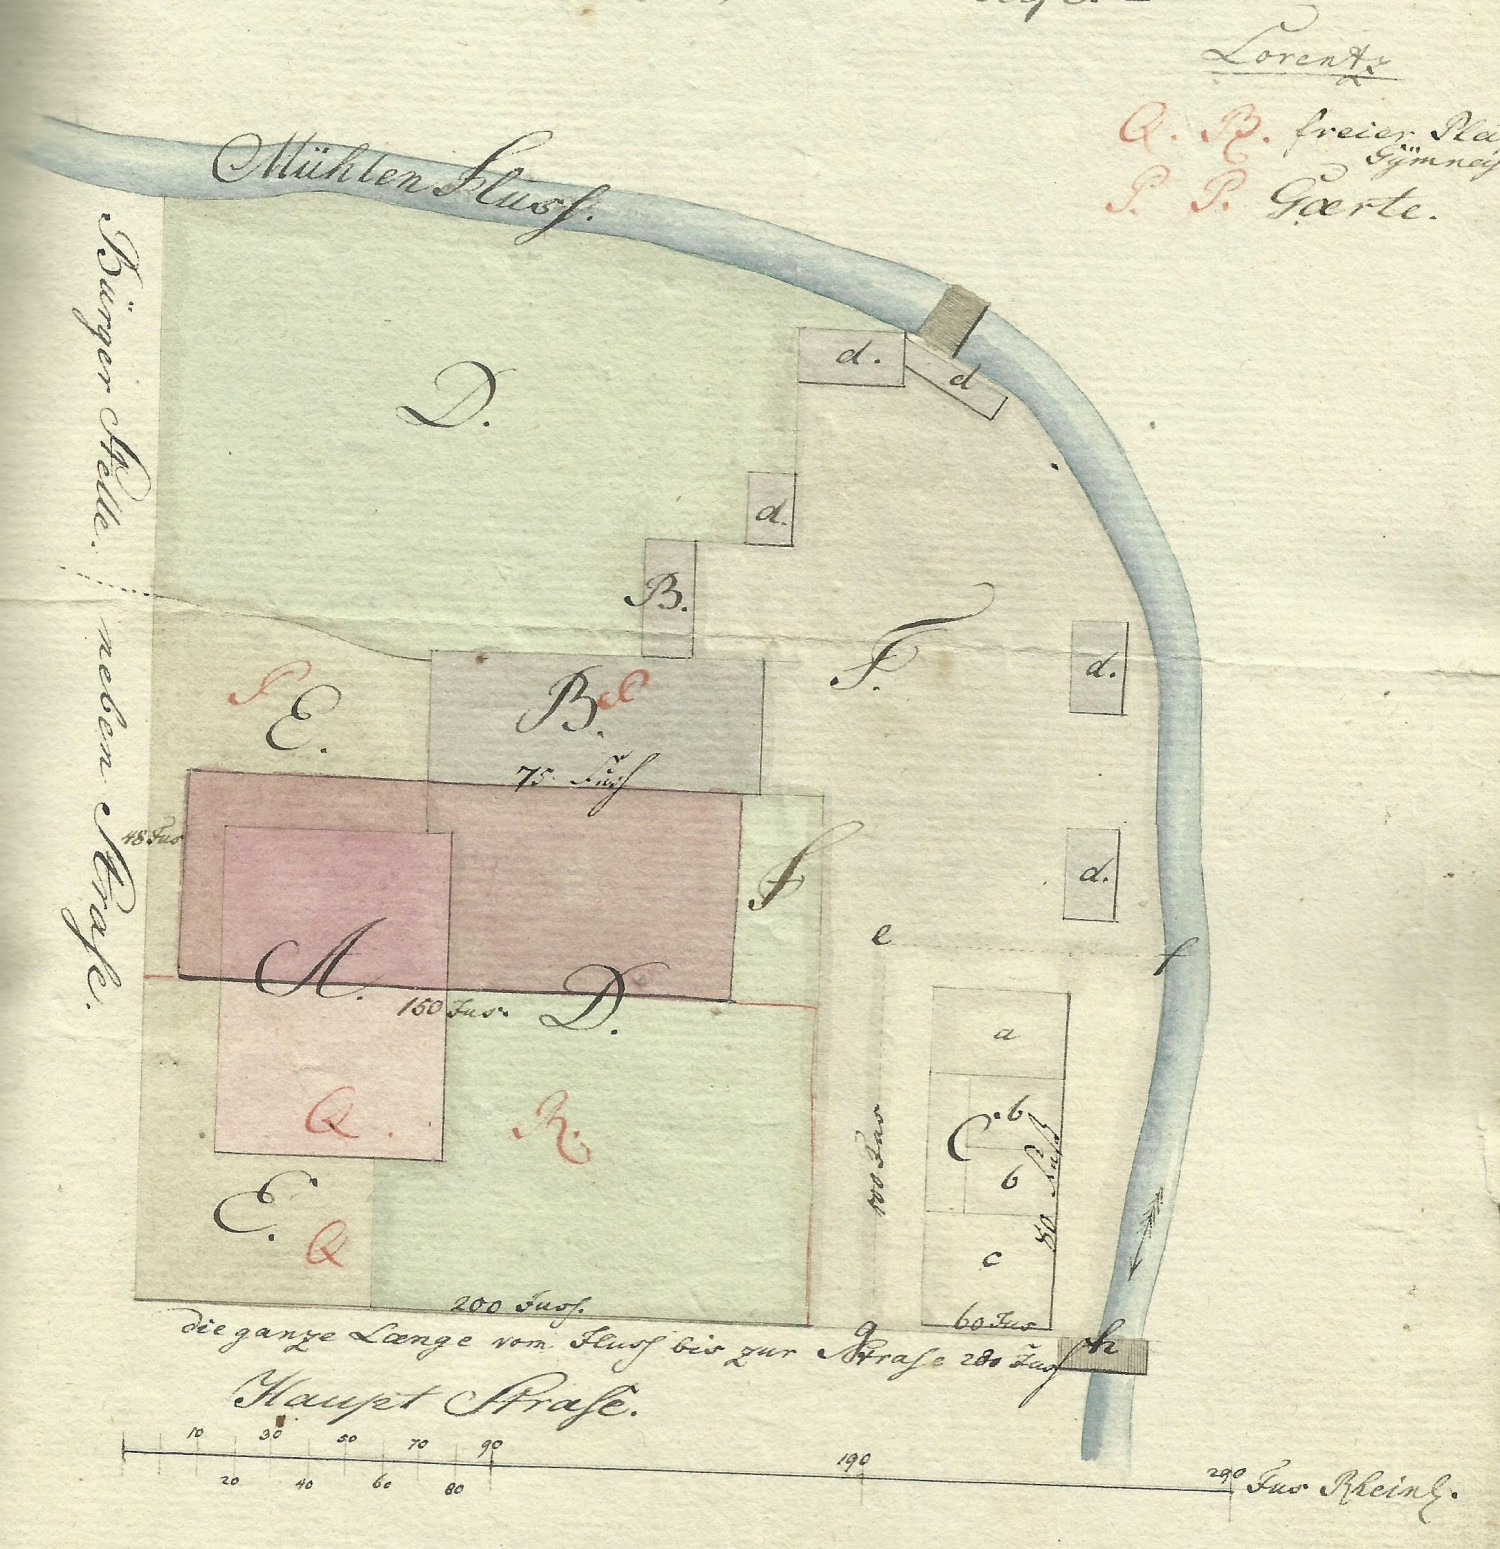 Plan sytuacyjny posesji należącej do gimnazjum w Wałczu w 1796 r. (źródło: Archiwum Muzeum Ziemi Wałeckiej w Wałczu).